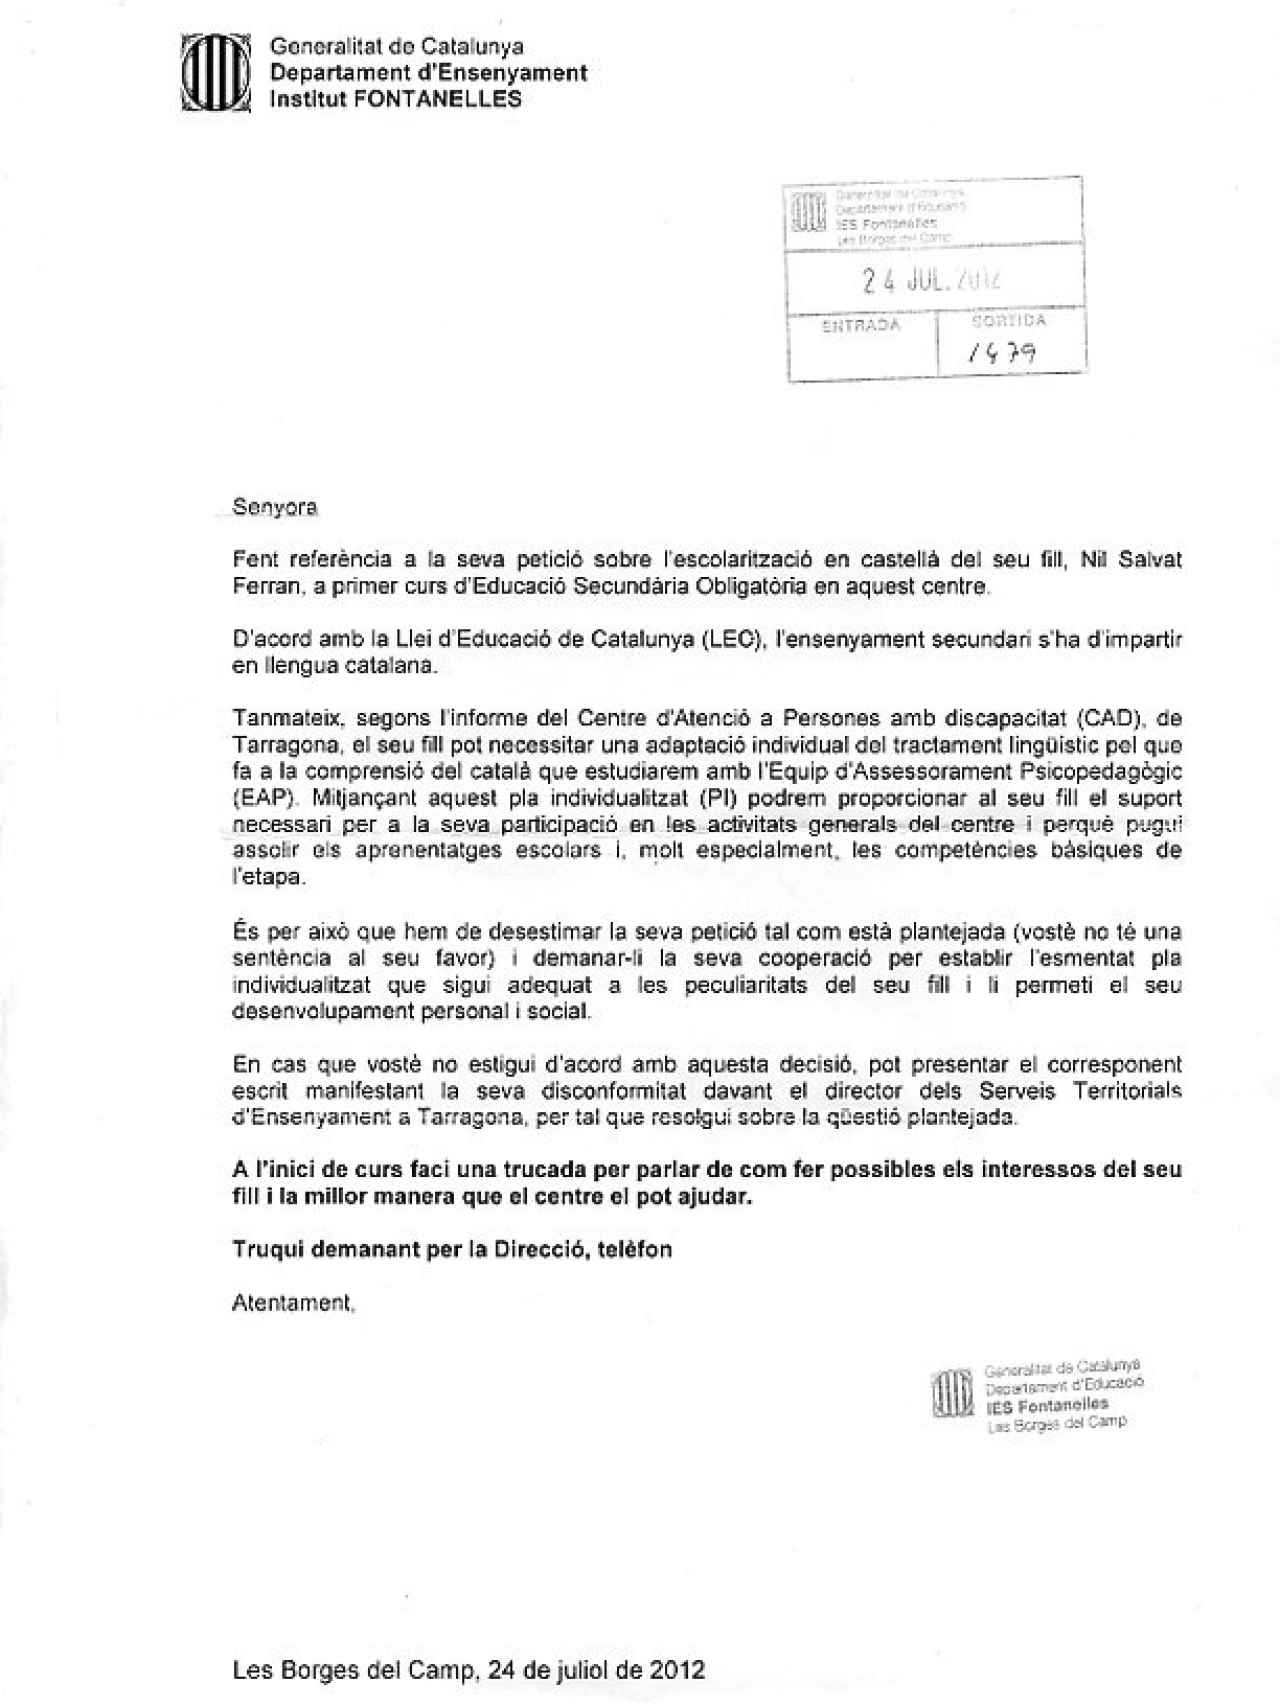 Carta remitida por el Instituto Fontanelles de les Borges del Camp en 2012